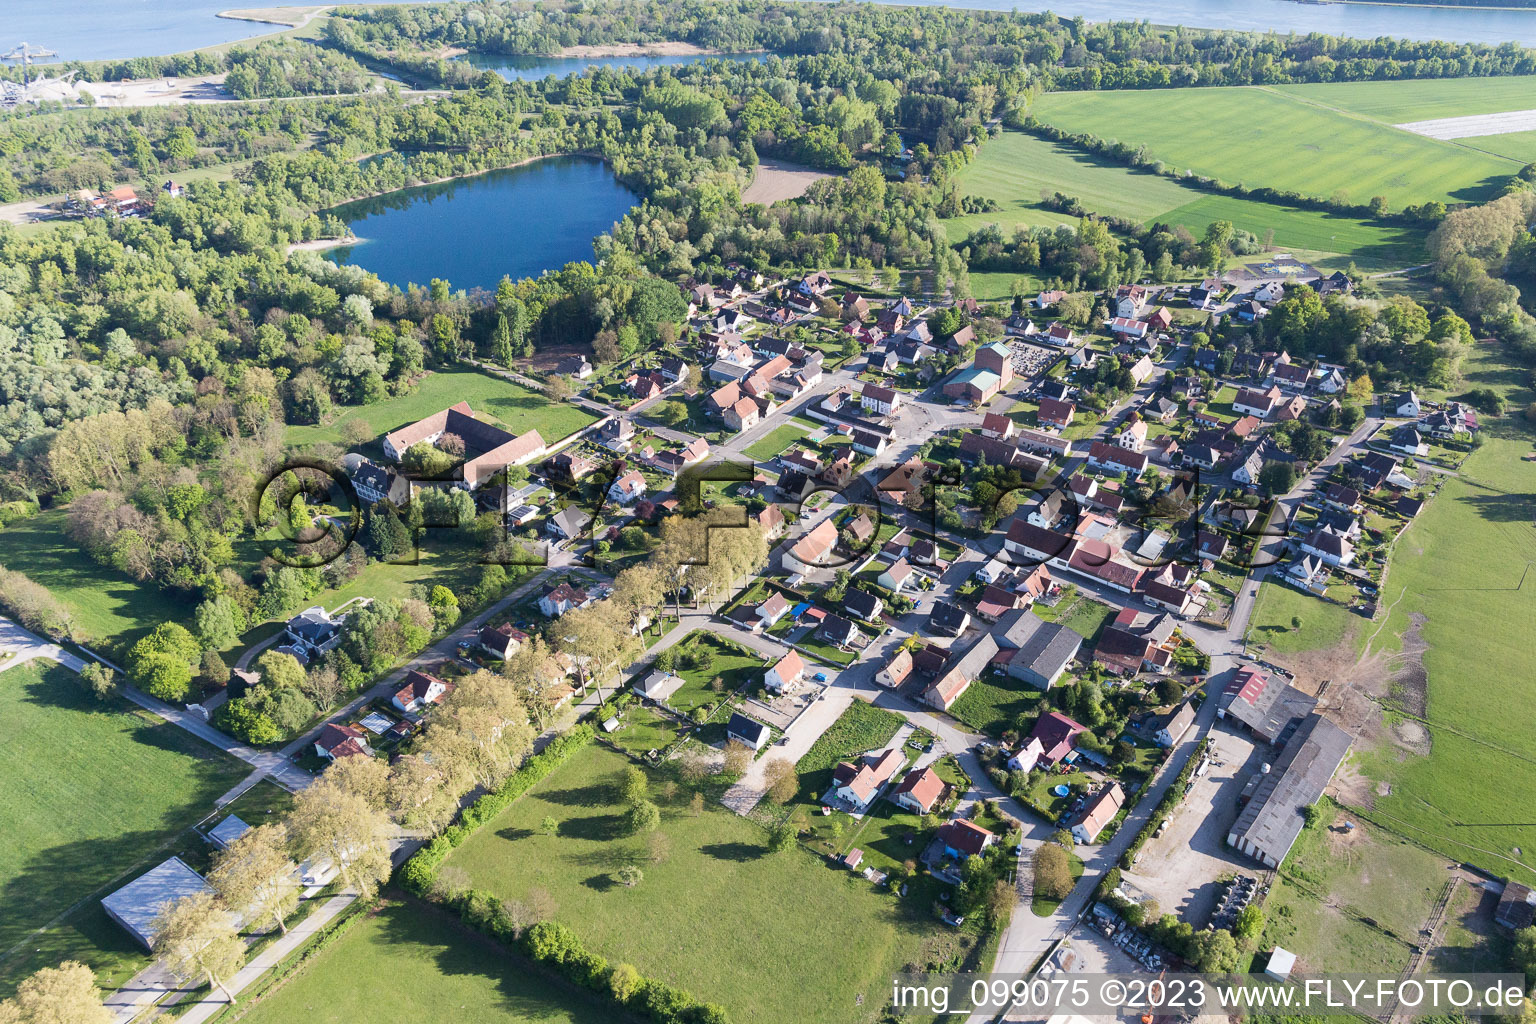 Fort-Louis im Bundesland Bas-Rhin, Frankreich aus der Drohnenperspektive